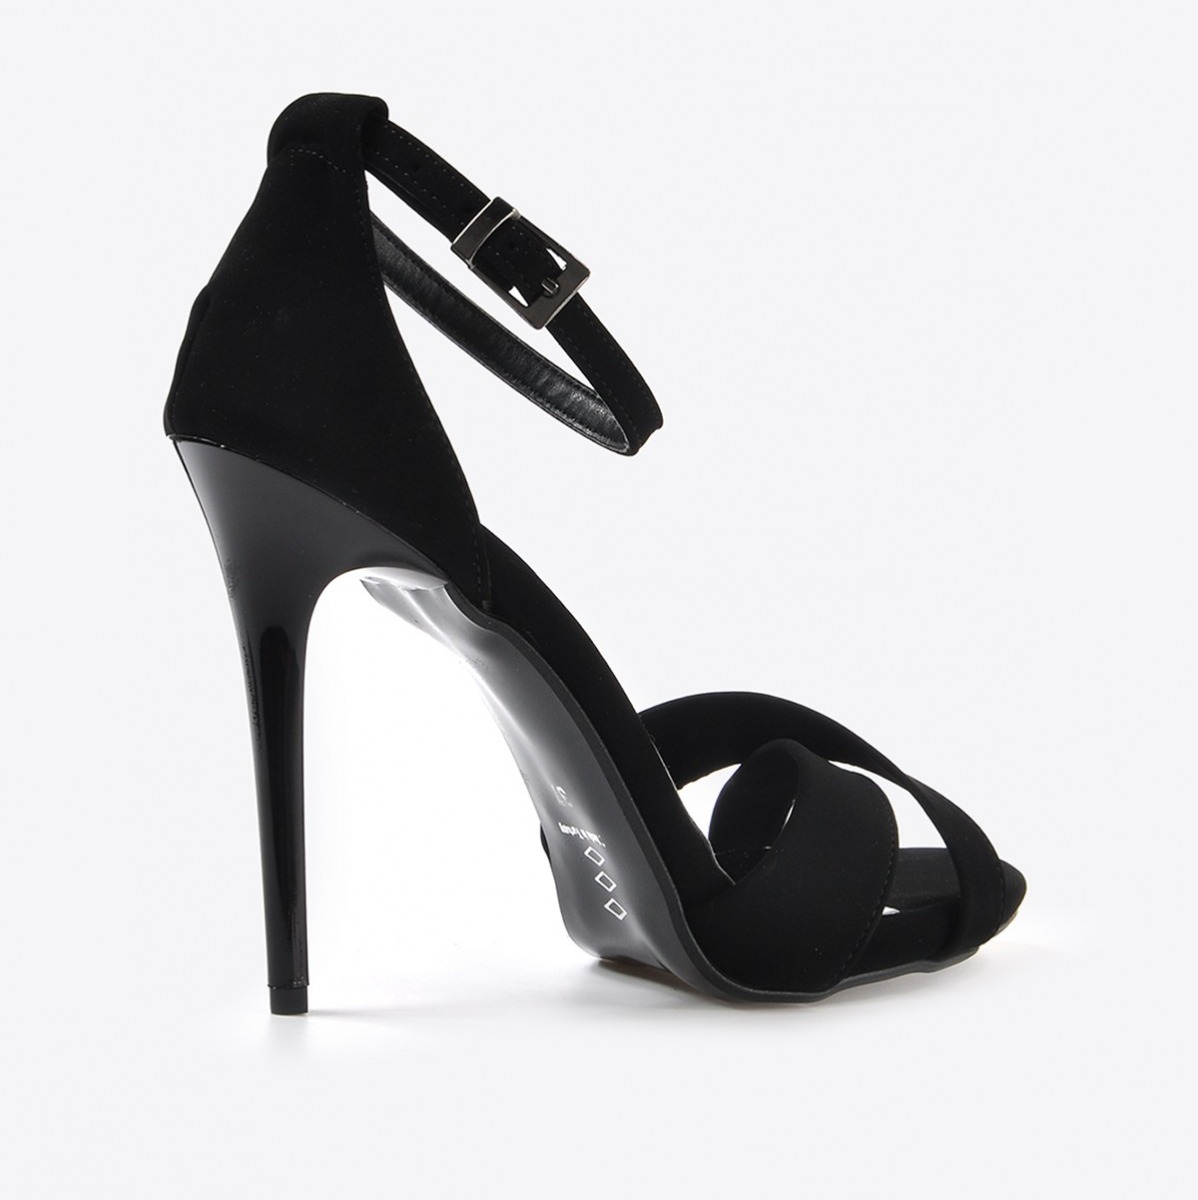 Flo Kadın  Siyah Süet Klasik Topuklu Ayakkabı VZN20-190Y. 5